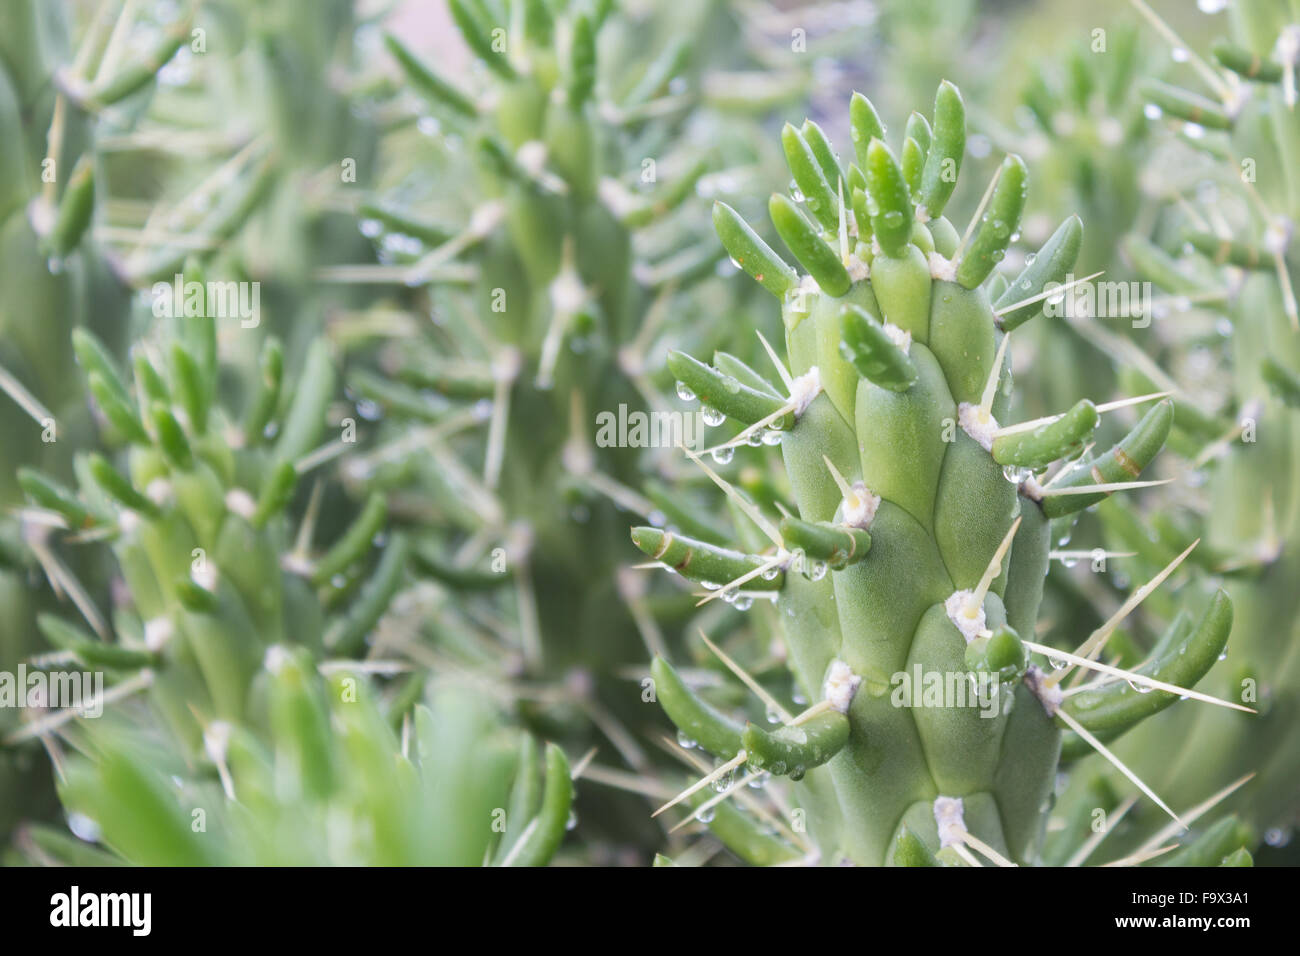 Plantes Succulentes cactus / close-up - nature background Banque D'Images